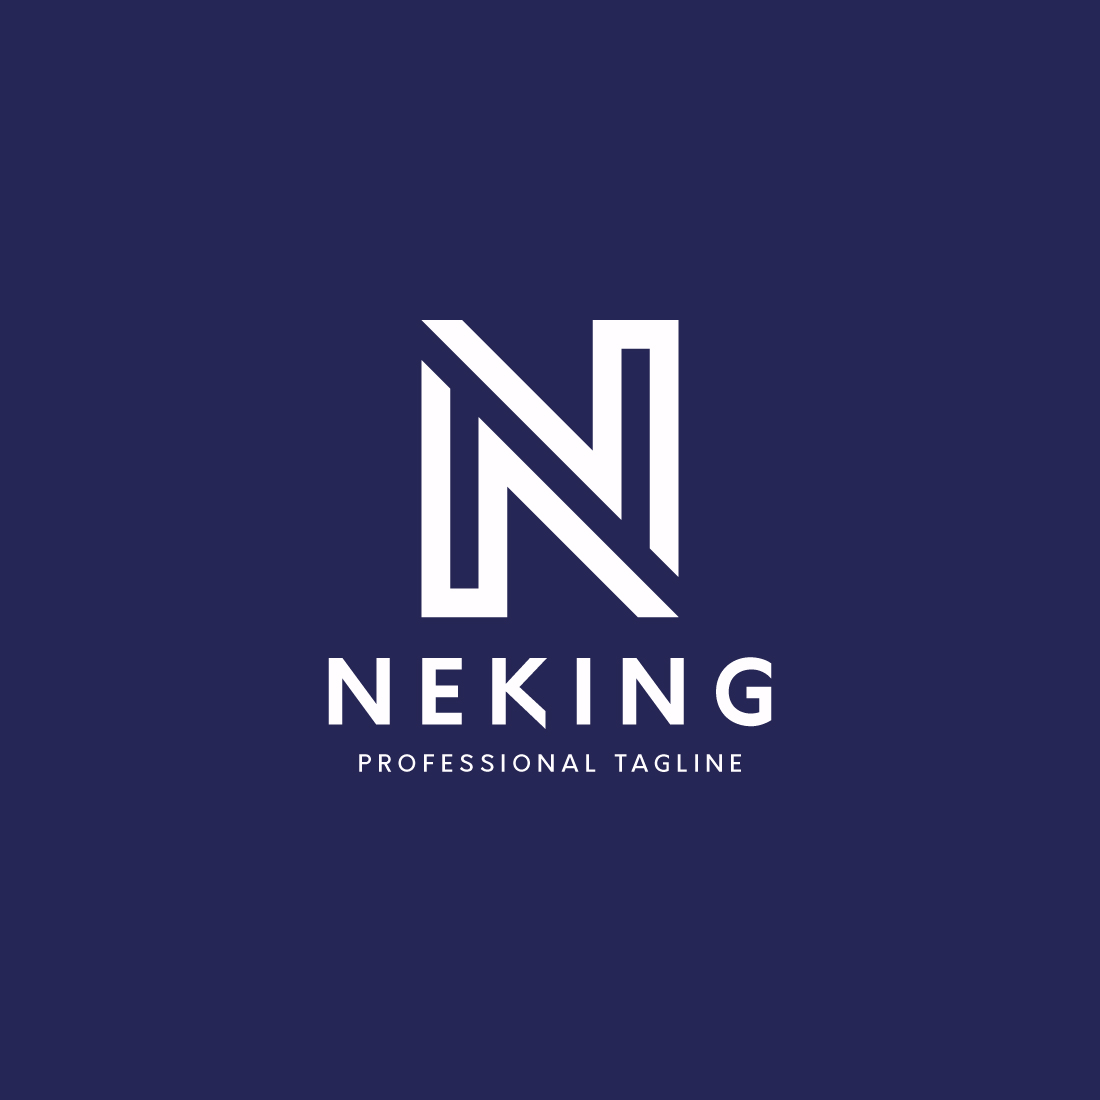 Neking Letter N Logo preview image.